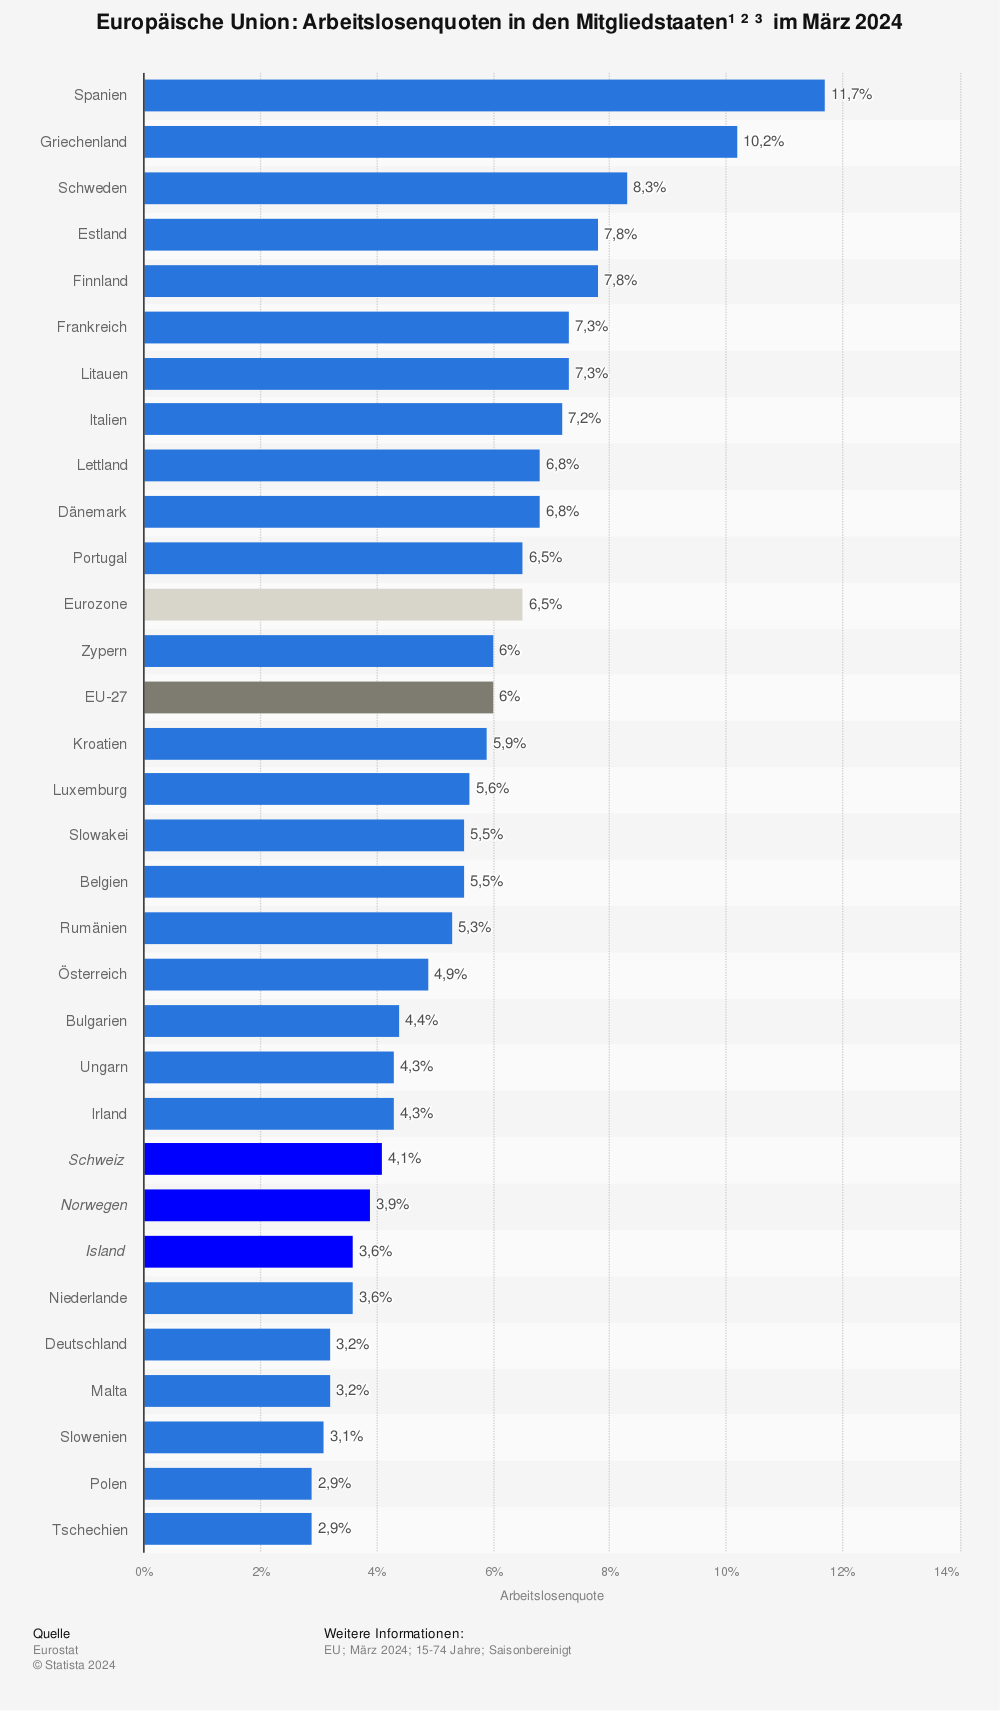 Arbeitslosenquote in den EU-Ländern August 2013